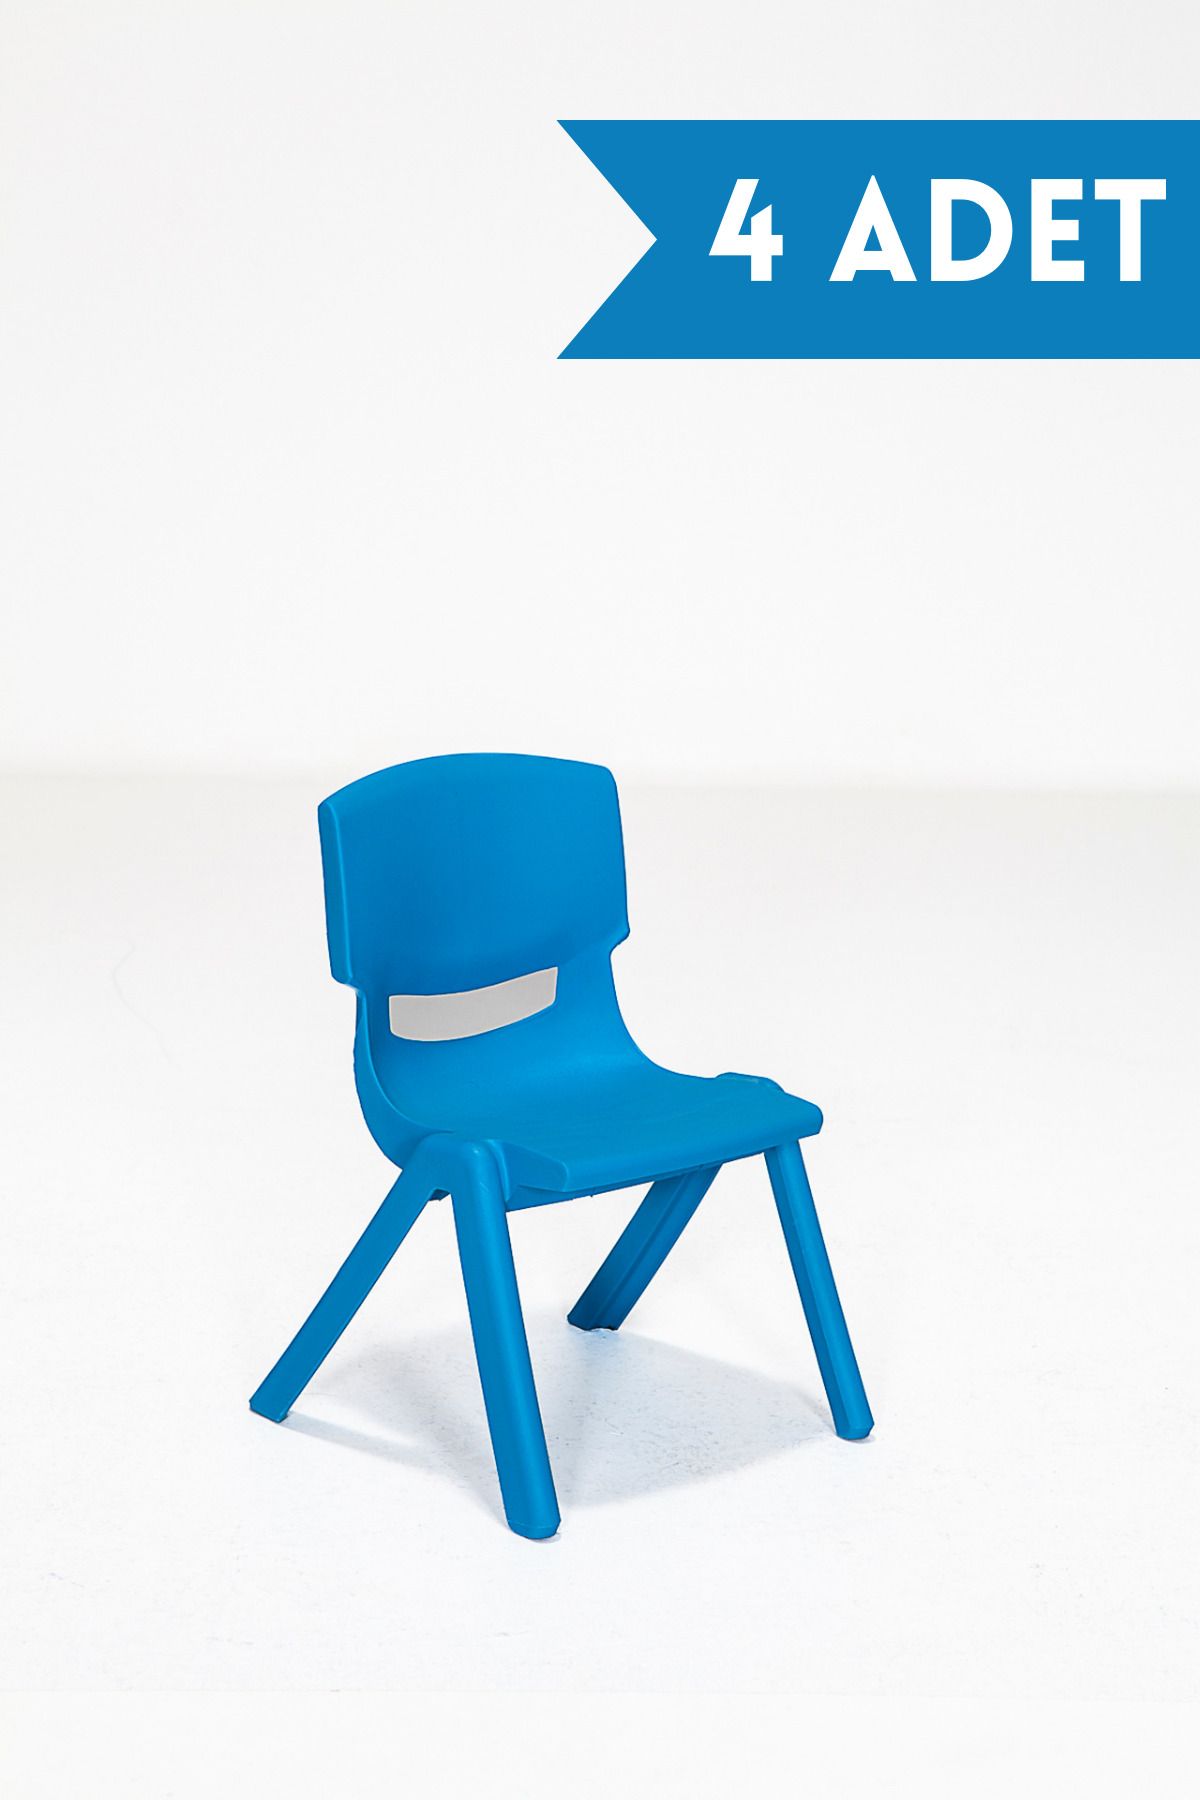 MOBETTO 4 Adet Kreş Anaokulu Çocuk Sandalyesi Sert Plastik- Mavi